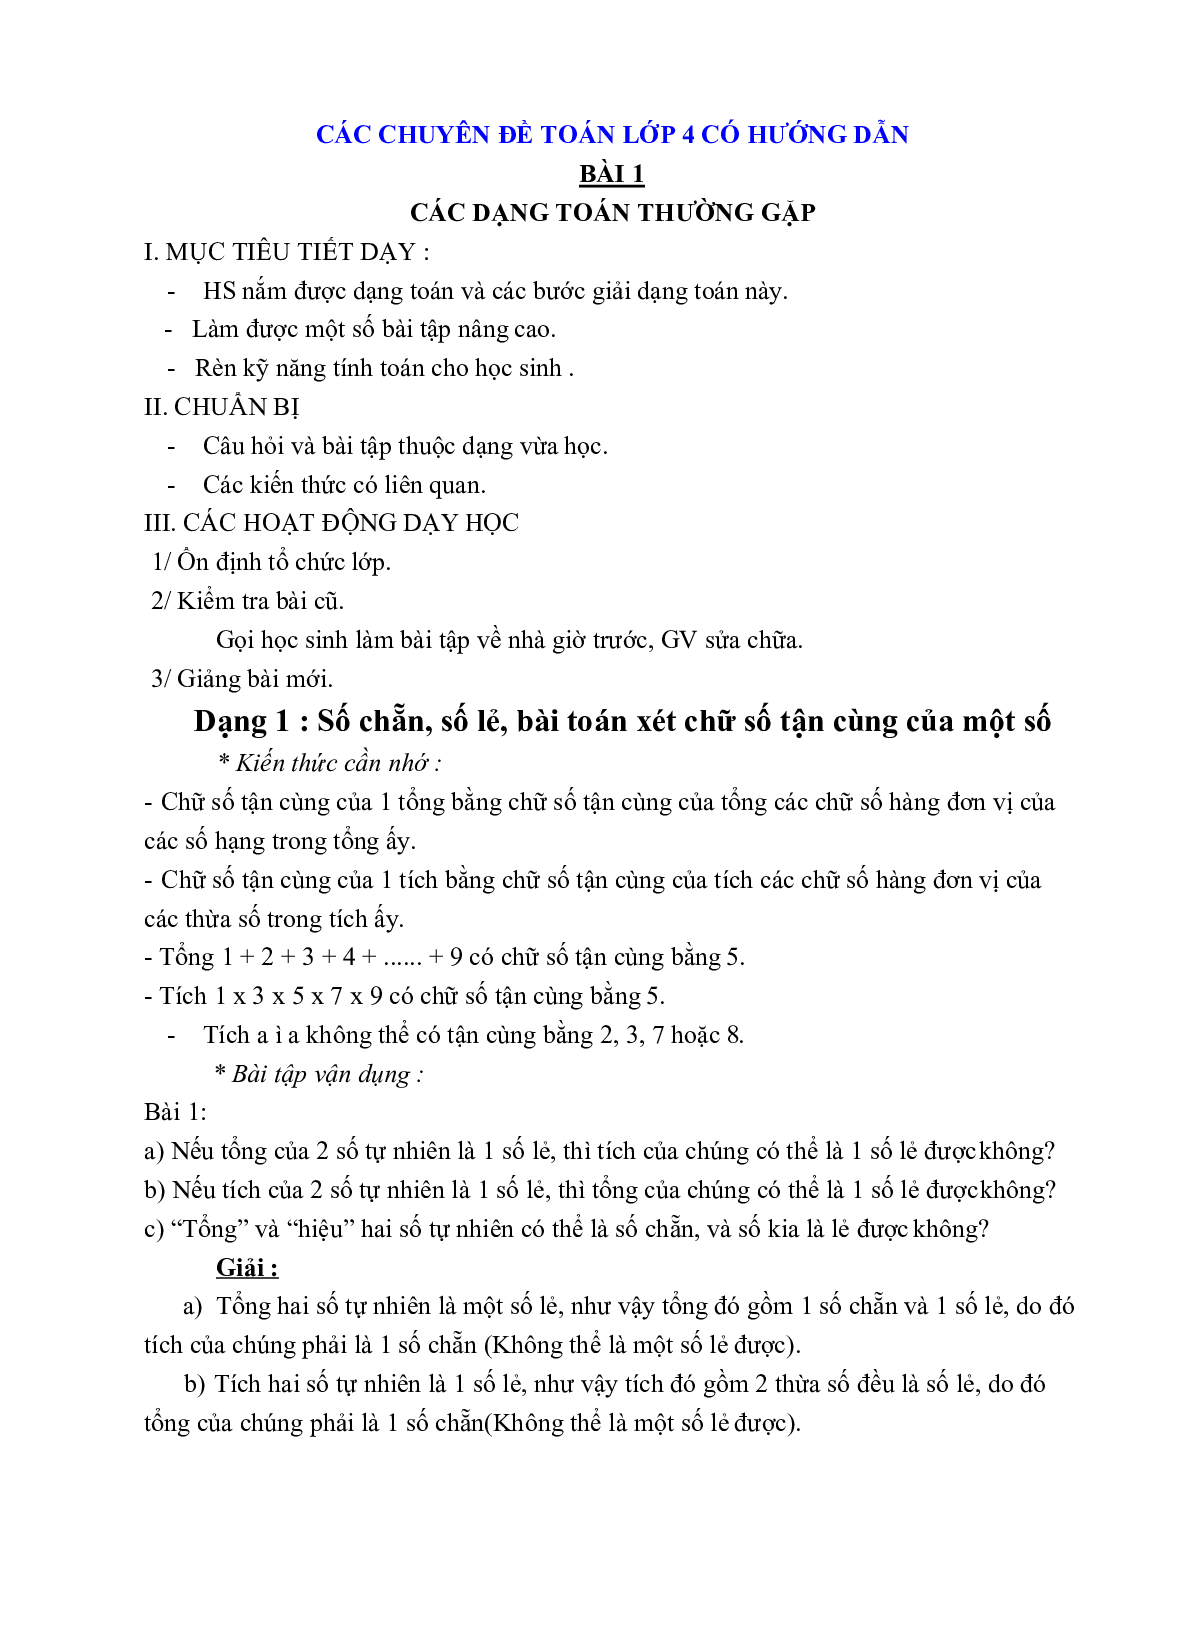 Các chuyên đề môn Toán lớp 4 có đáp án chi tiết (trang 1)